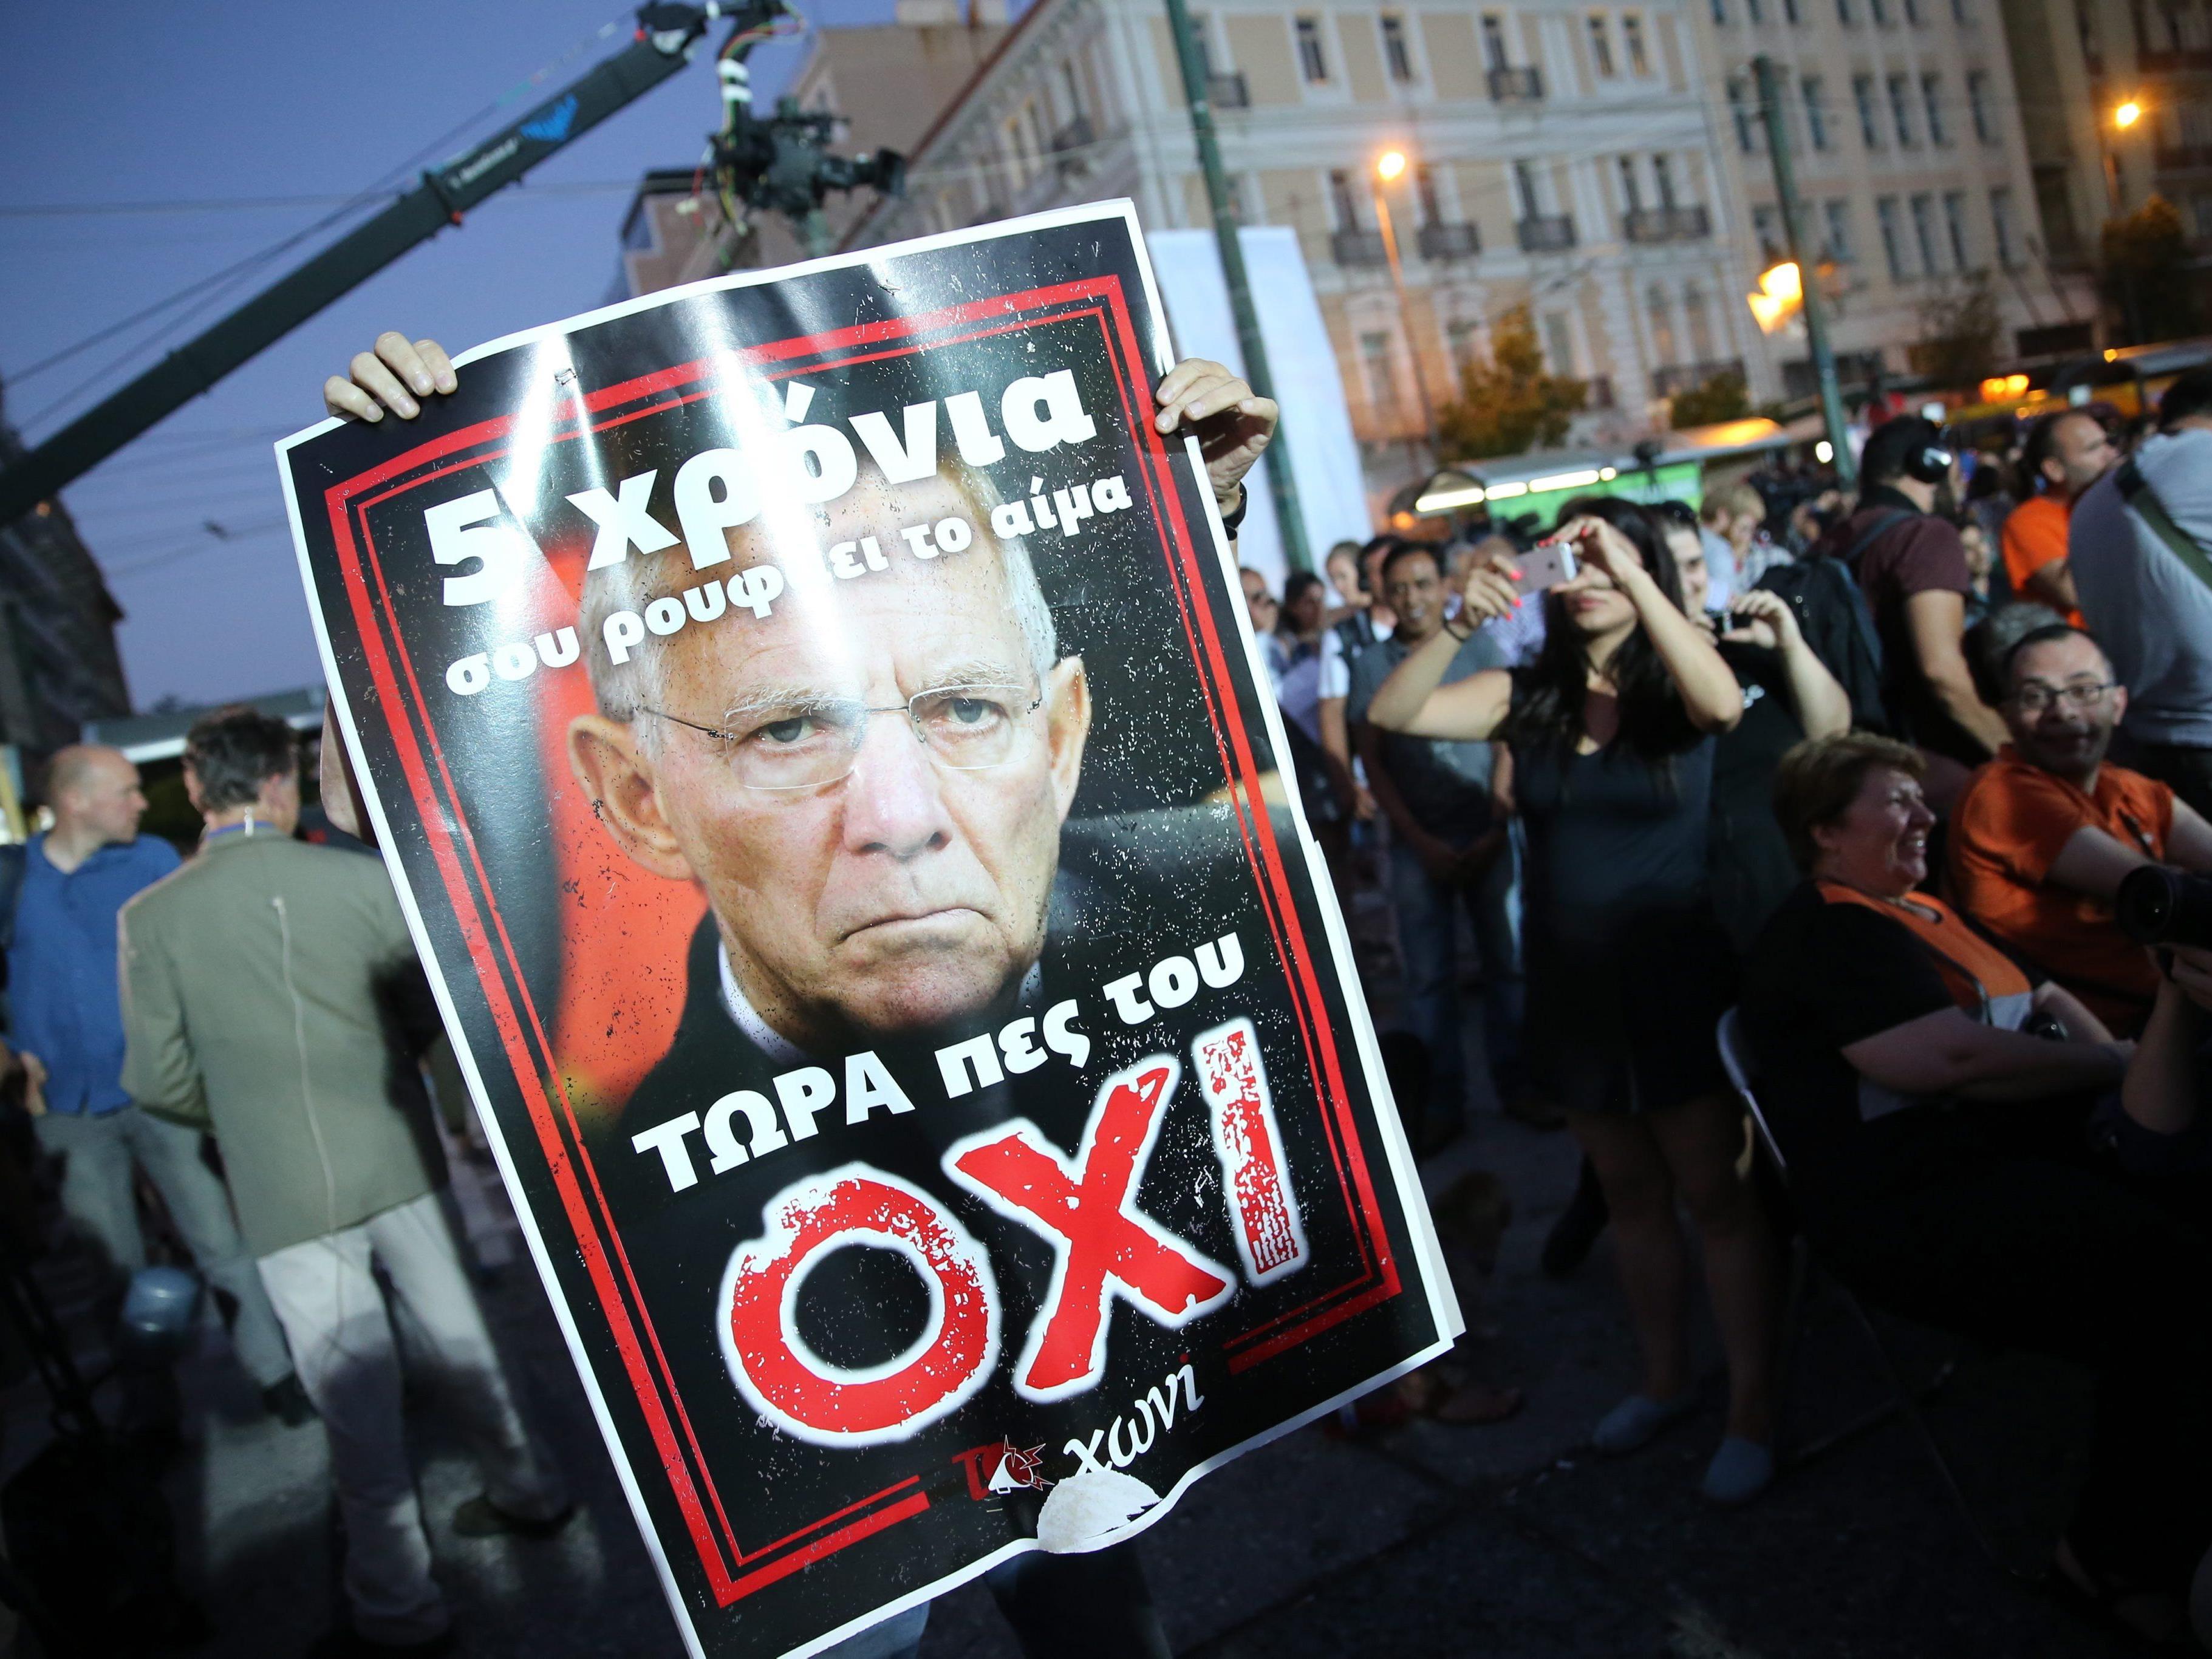 Griechen bieten Gläubigern trotz Grexit-Gefahr die Stirn.